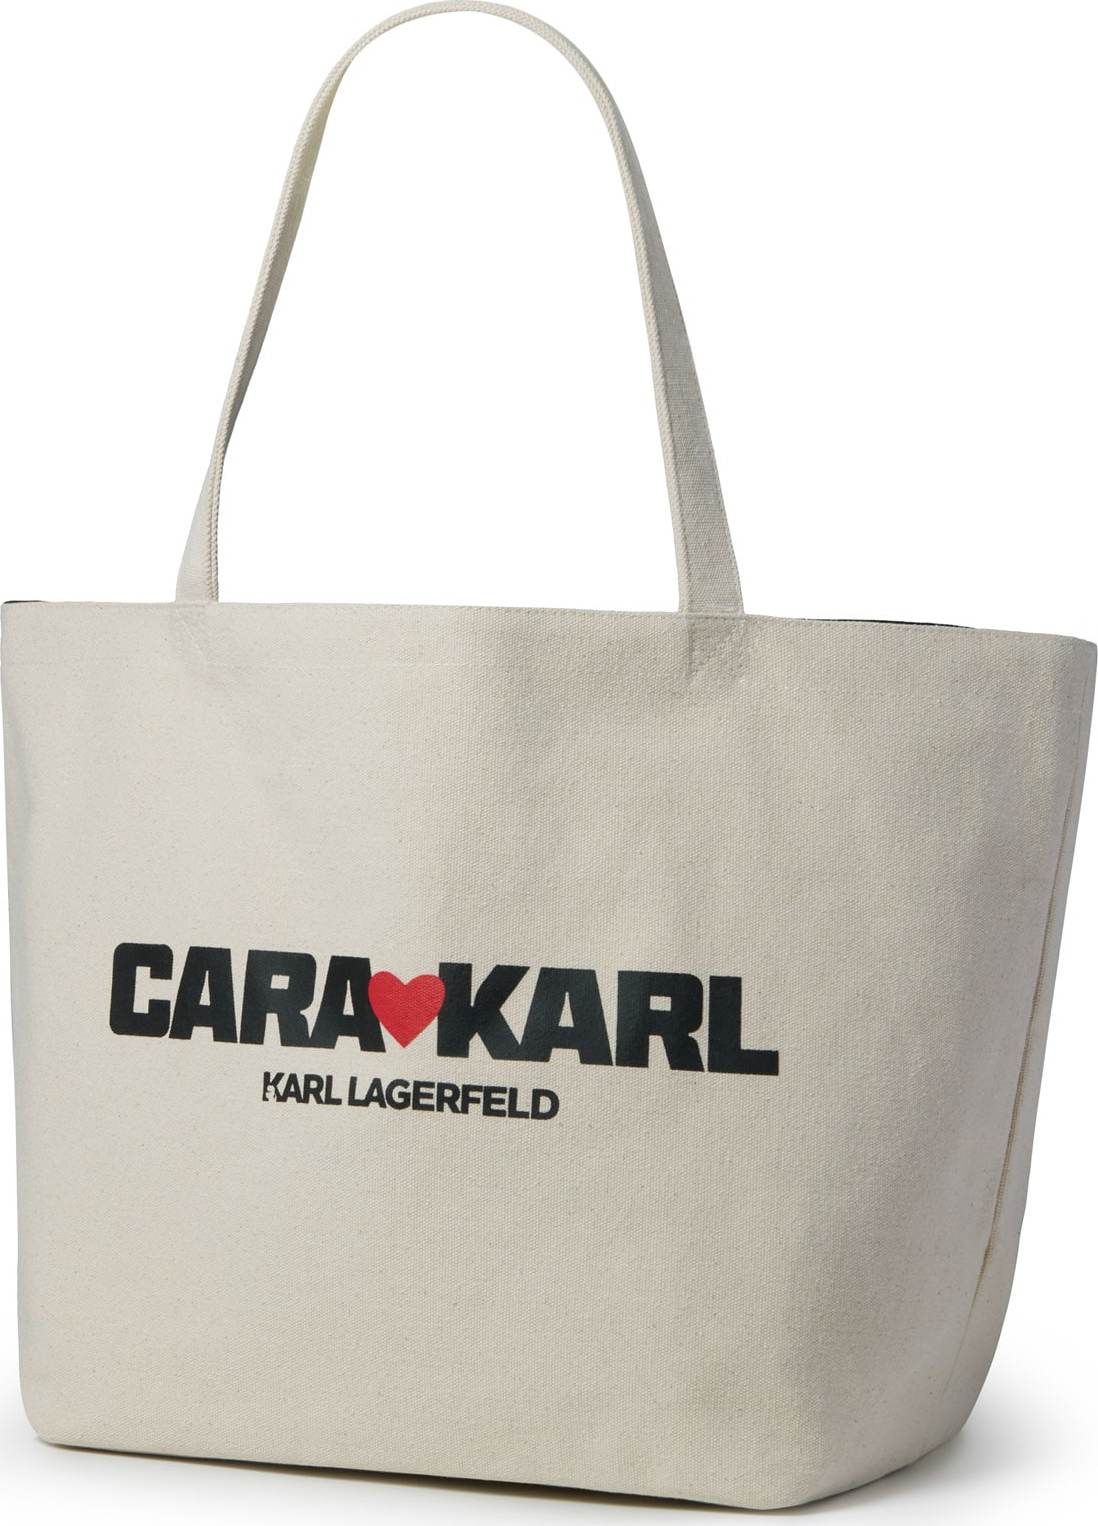 KARL LAGERFELD x CARA DELEVINGNE Nákupní taška béžová / červená / černá